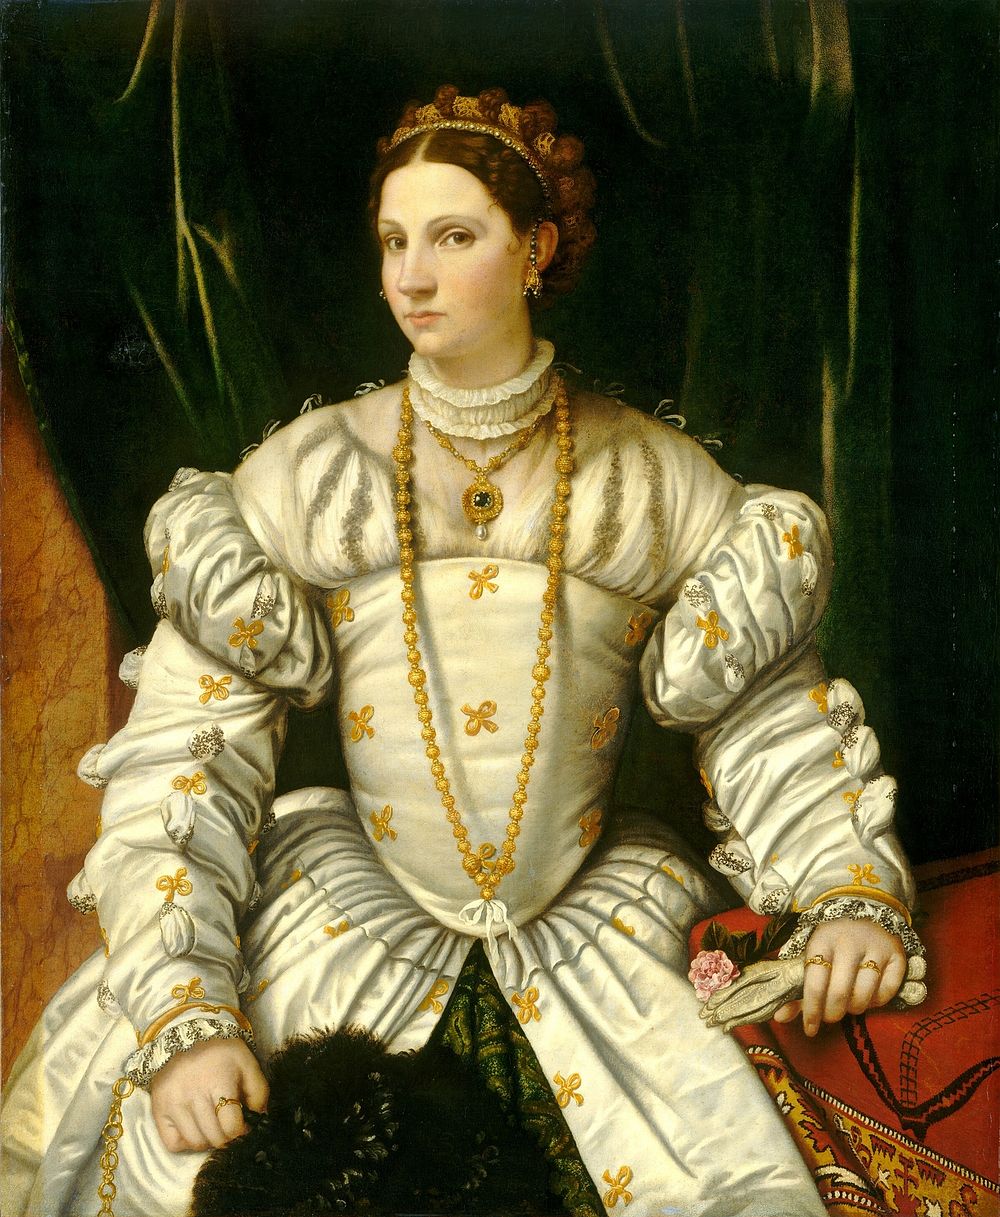 Portrait of a Lady in White (ca. 1540) by Moretto da Brescia.  